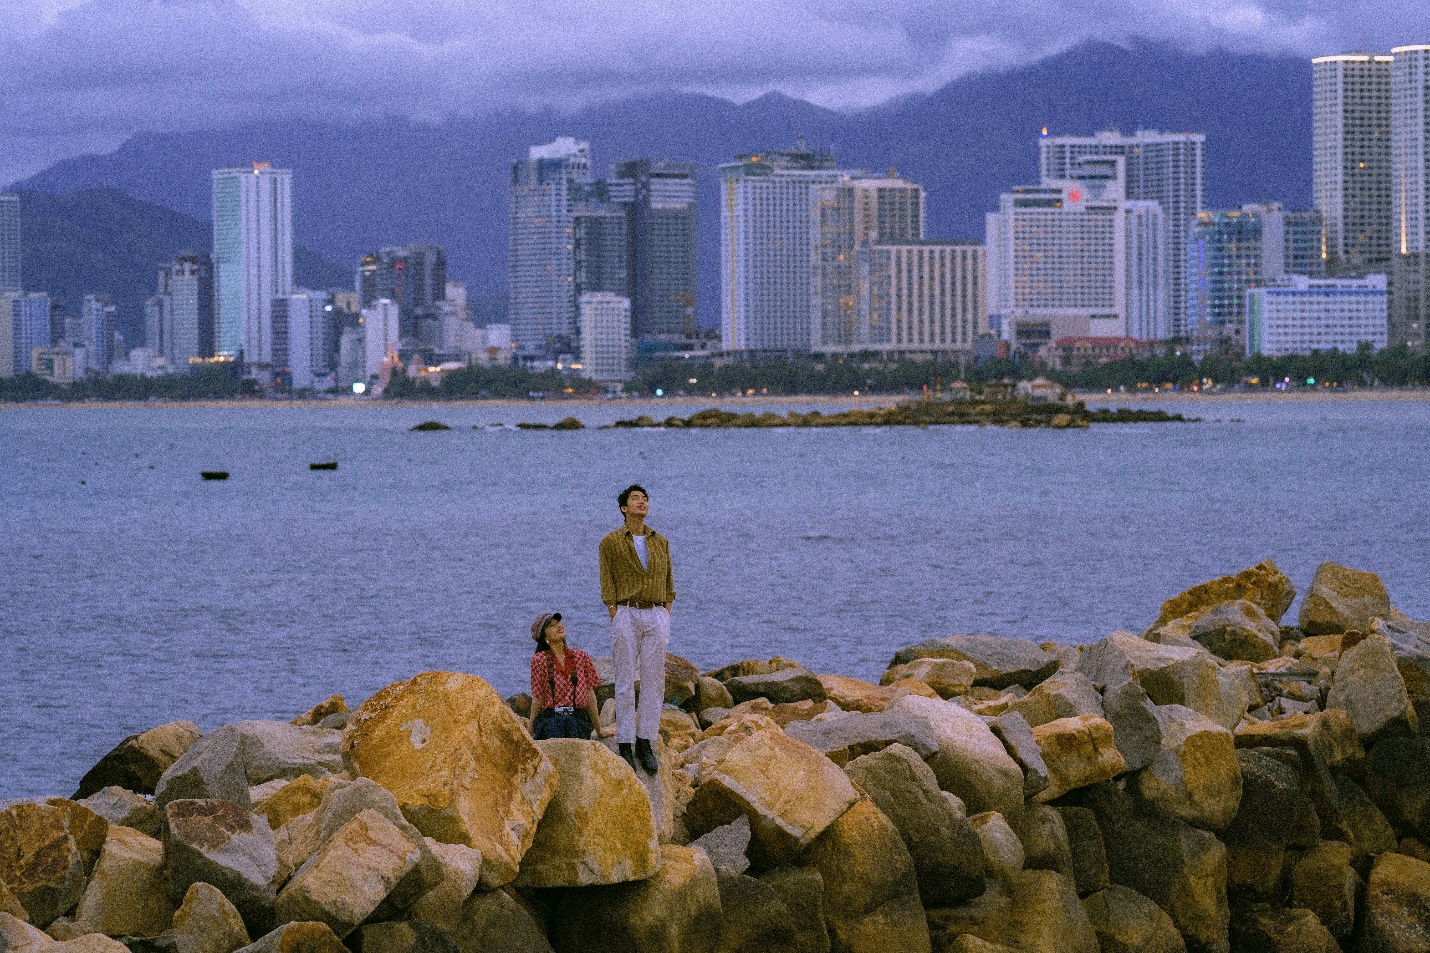 Bộ ảnh Hồng Kông của cặp gen Z khiến du khách truy tìm địa điểm check-in - 2